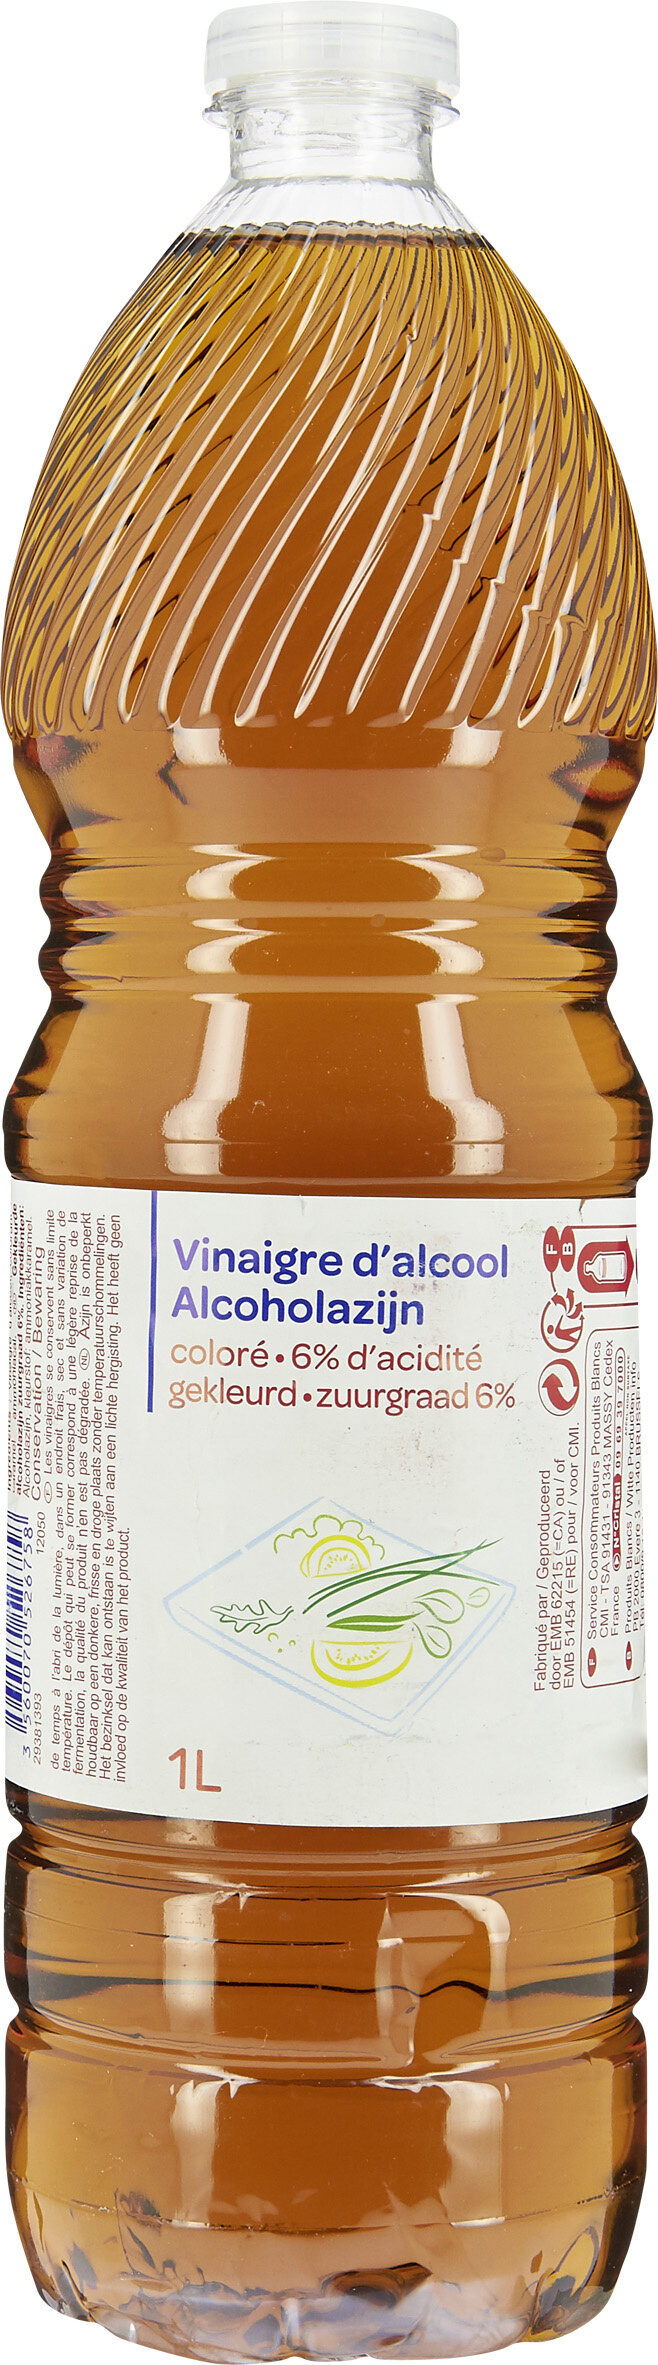 Vinaigre d'alcool coloré - Producto - fr